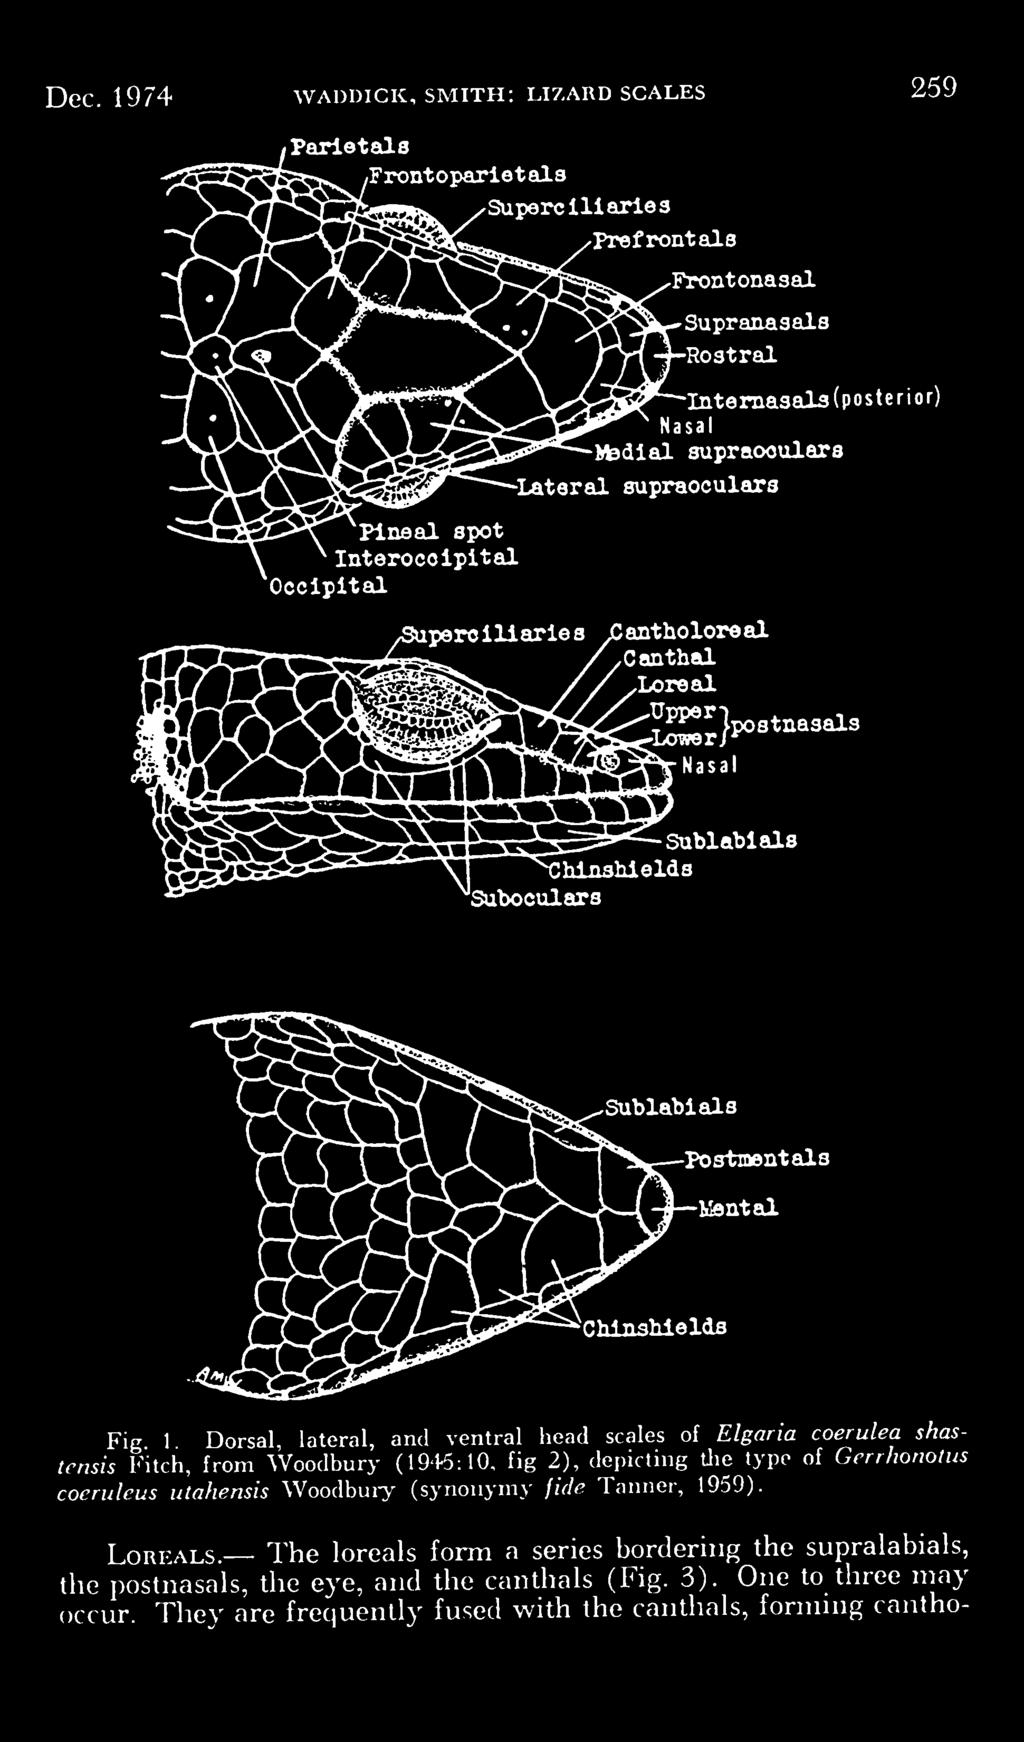 the type of Grrrhonolu: ileus utahensis Woodbury (synonymy fide Taimer, 1959). LoREALs.